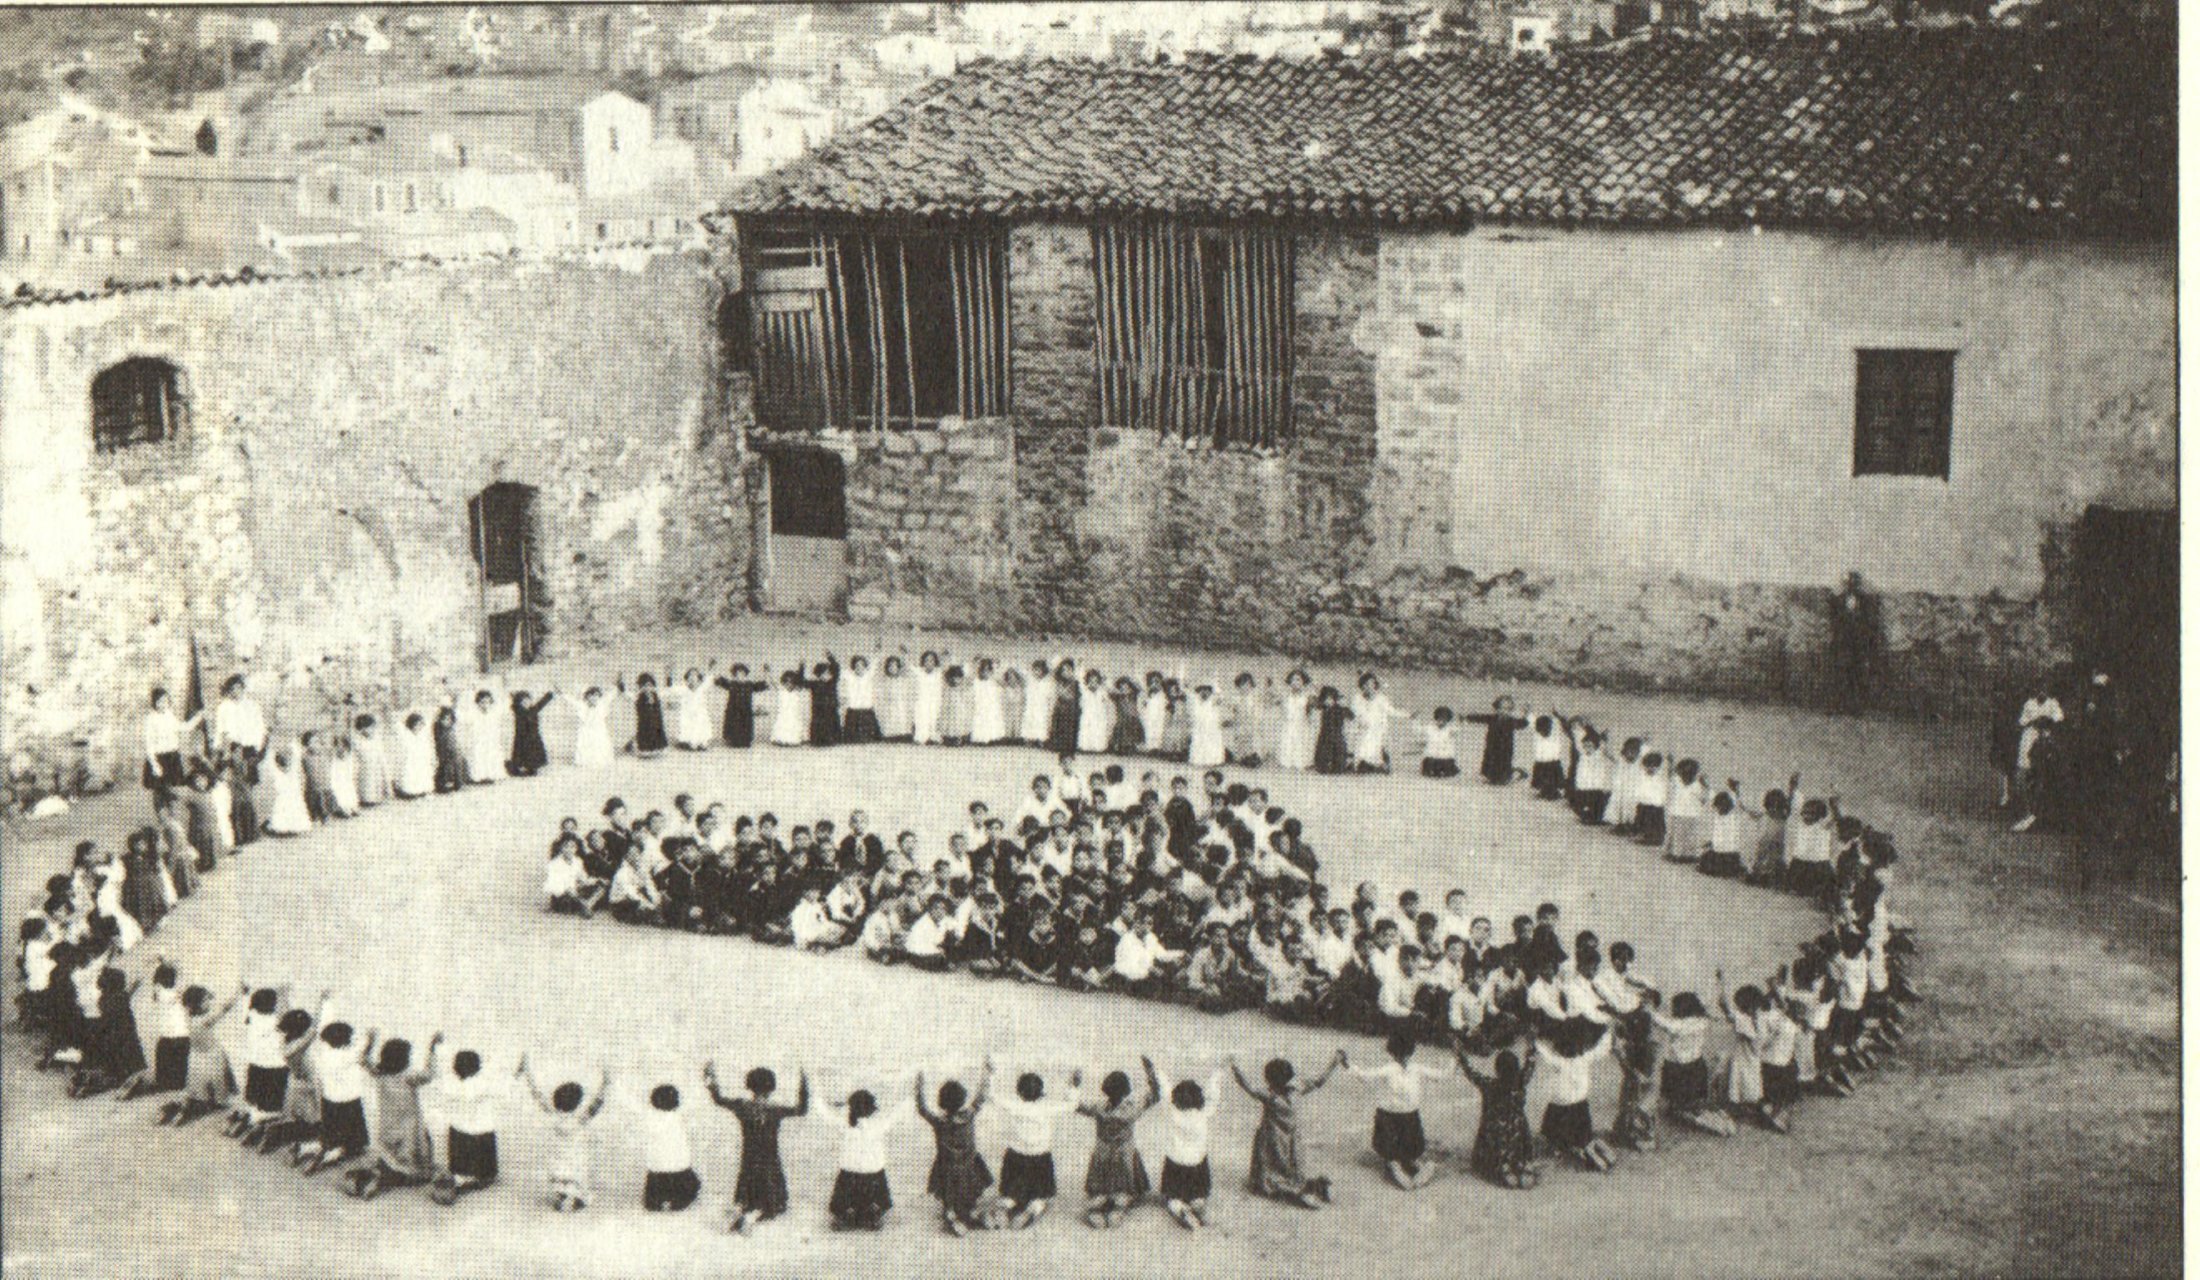 L'angolo sud-est di piazza Castello  durante il saggio ginnico in occasione del X° anniversario de "Il Bancarello" nel 1931